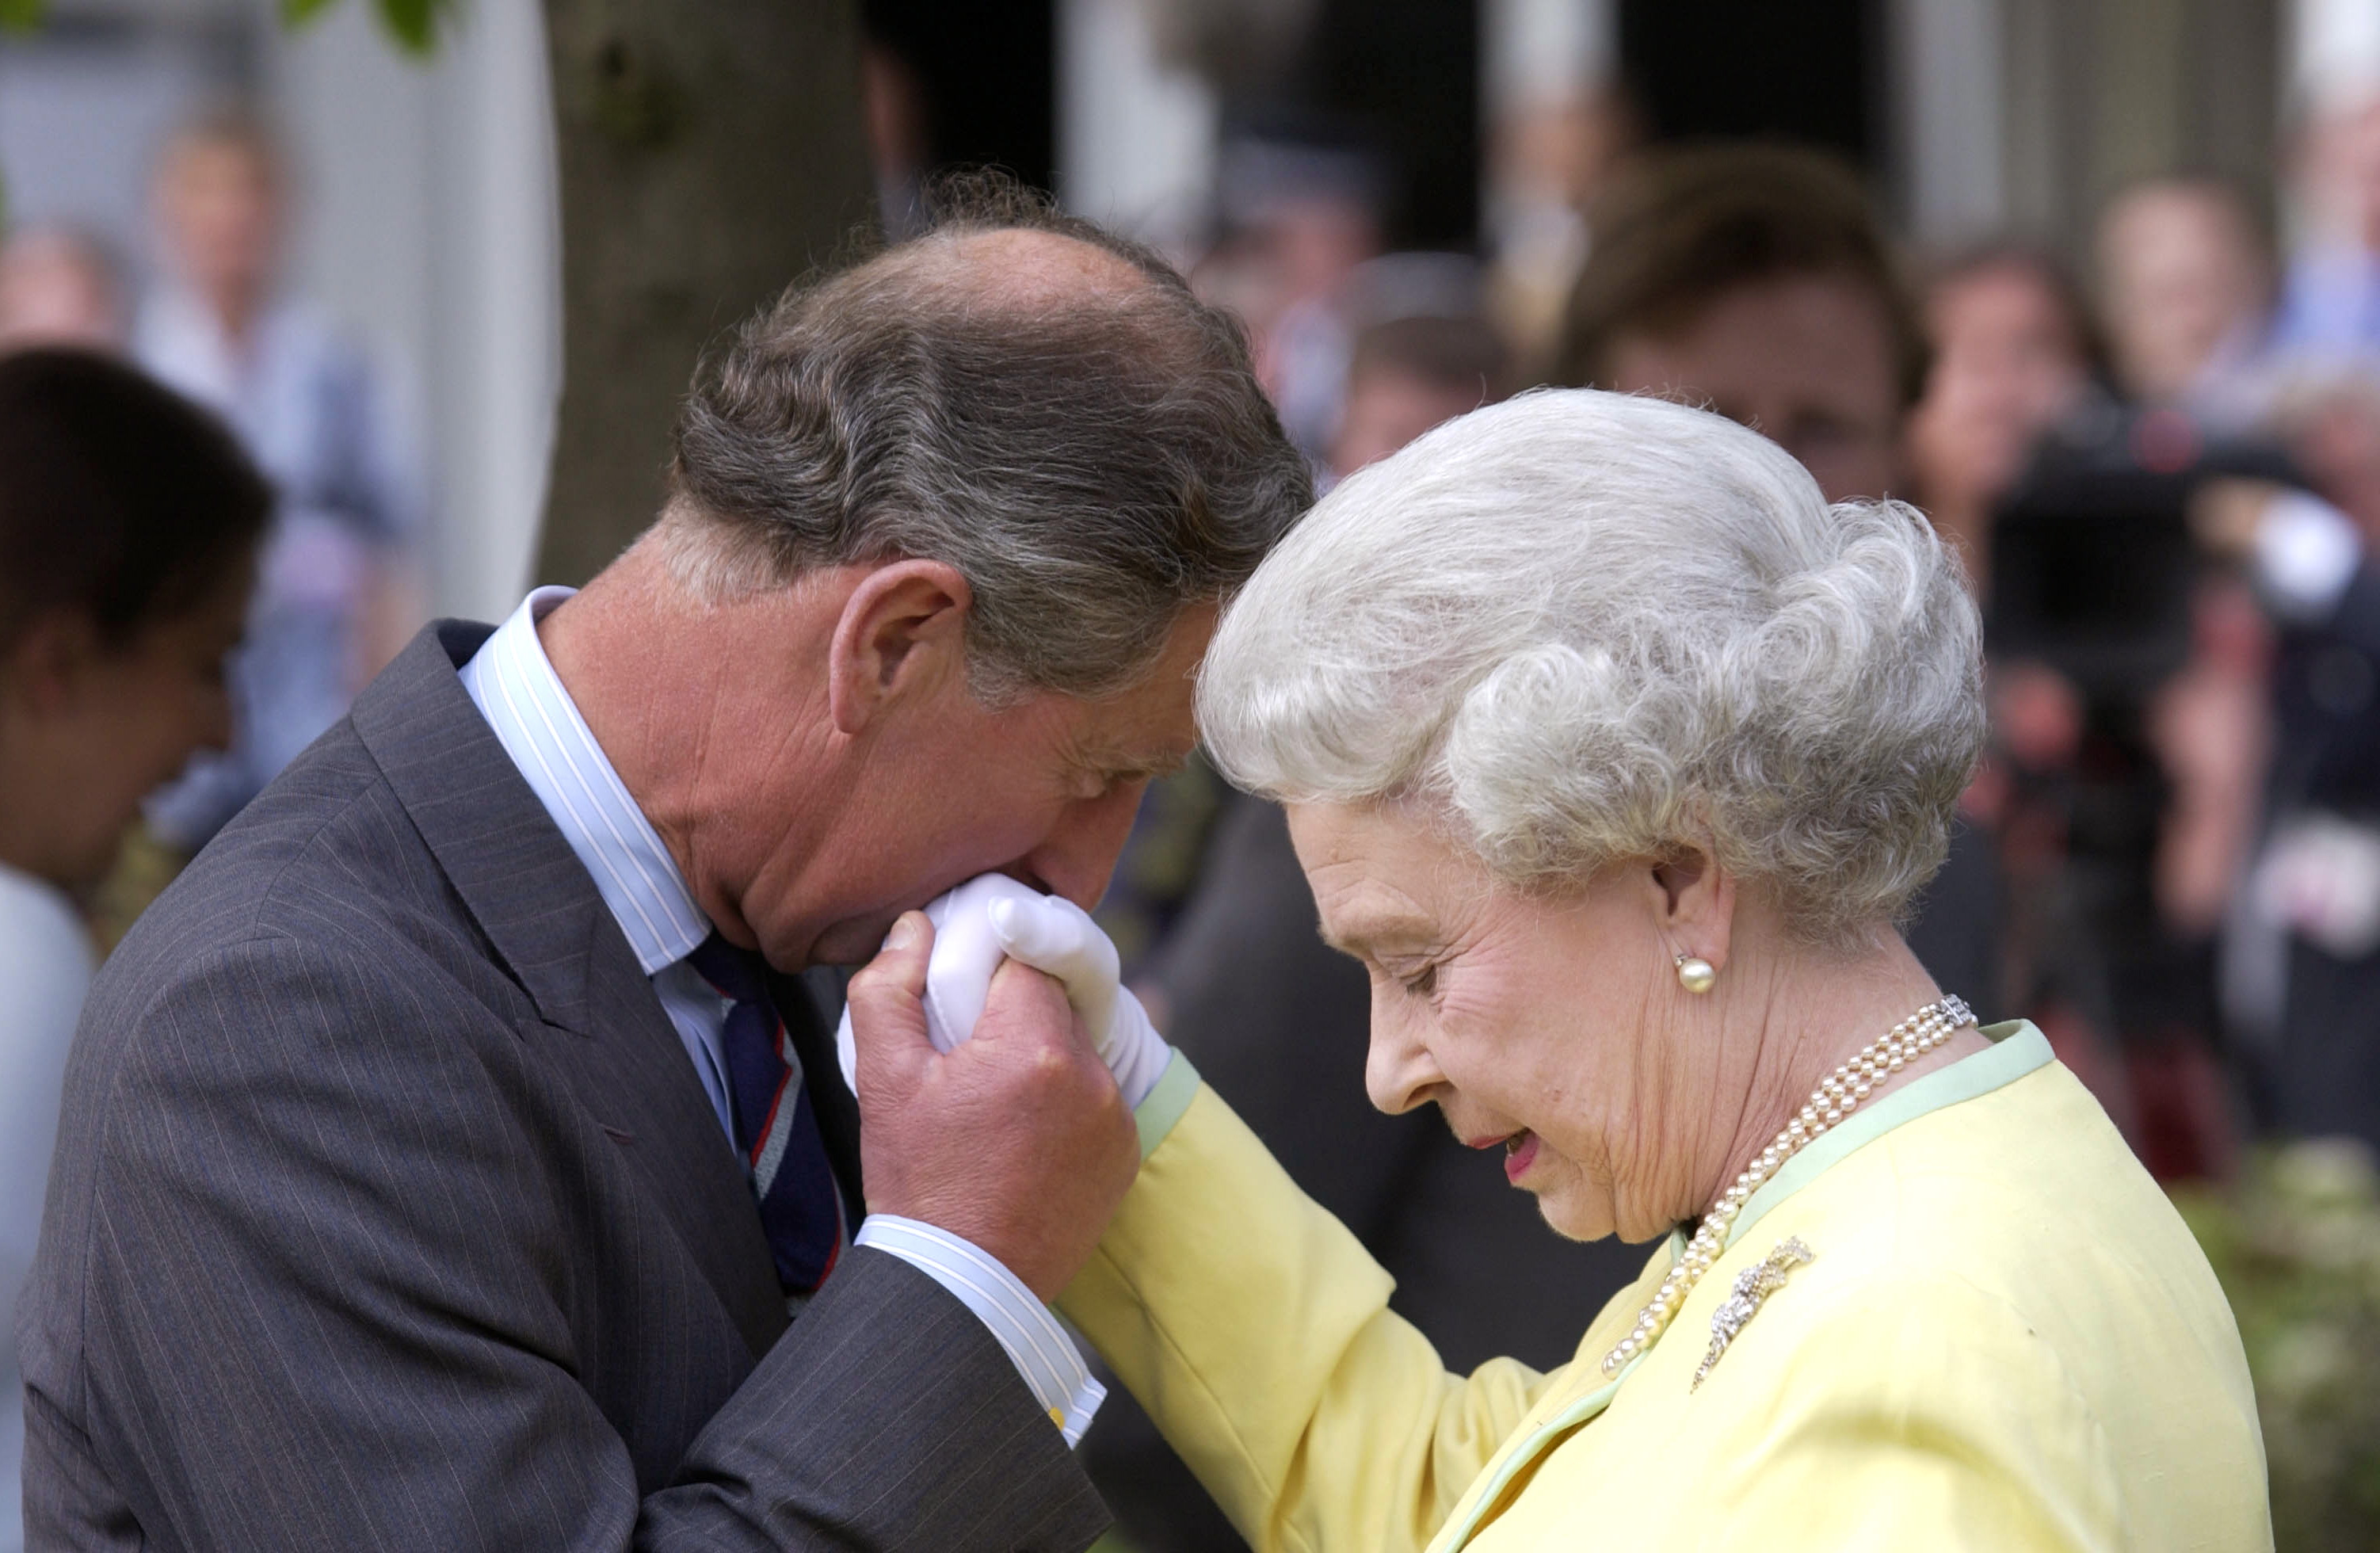 Le roi Charles III, ancien prince de Galles, embrassant la main de la reine Élisabeth II au Chelsea Flower Show en 2002 | Source : Getty Images